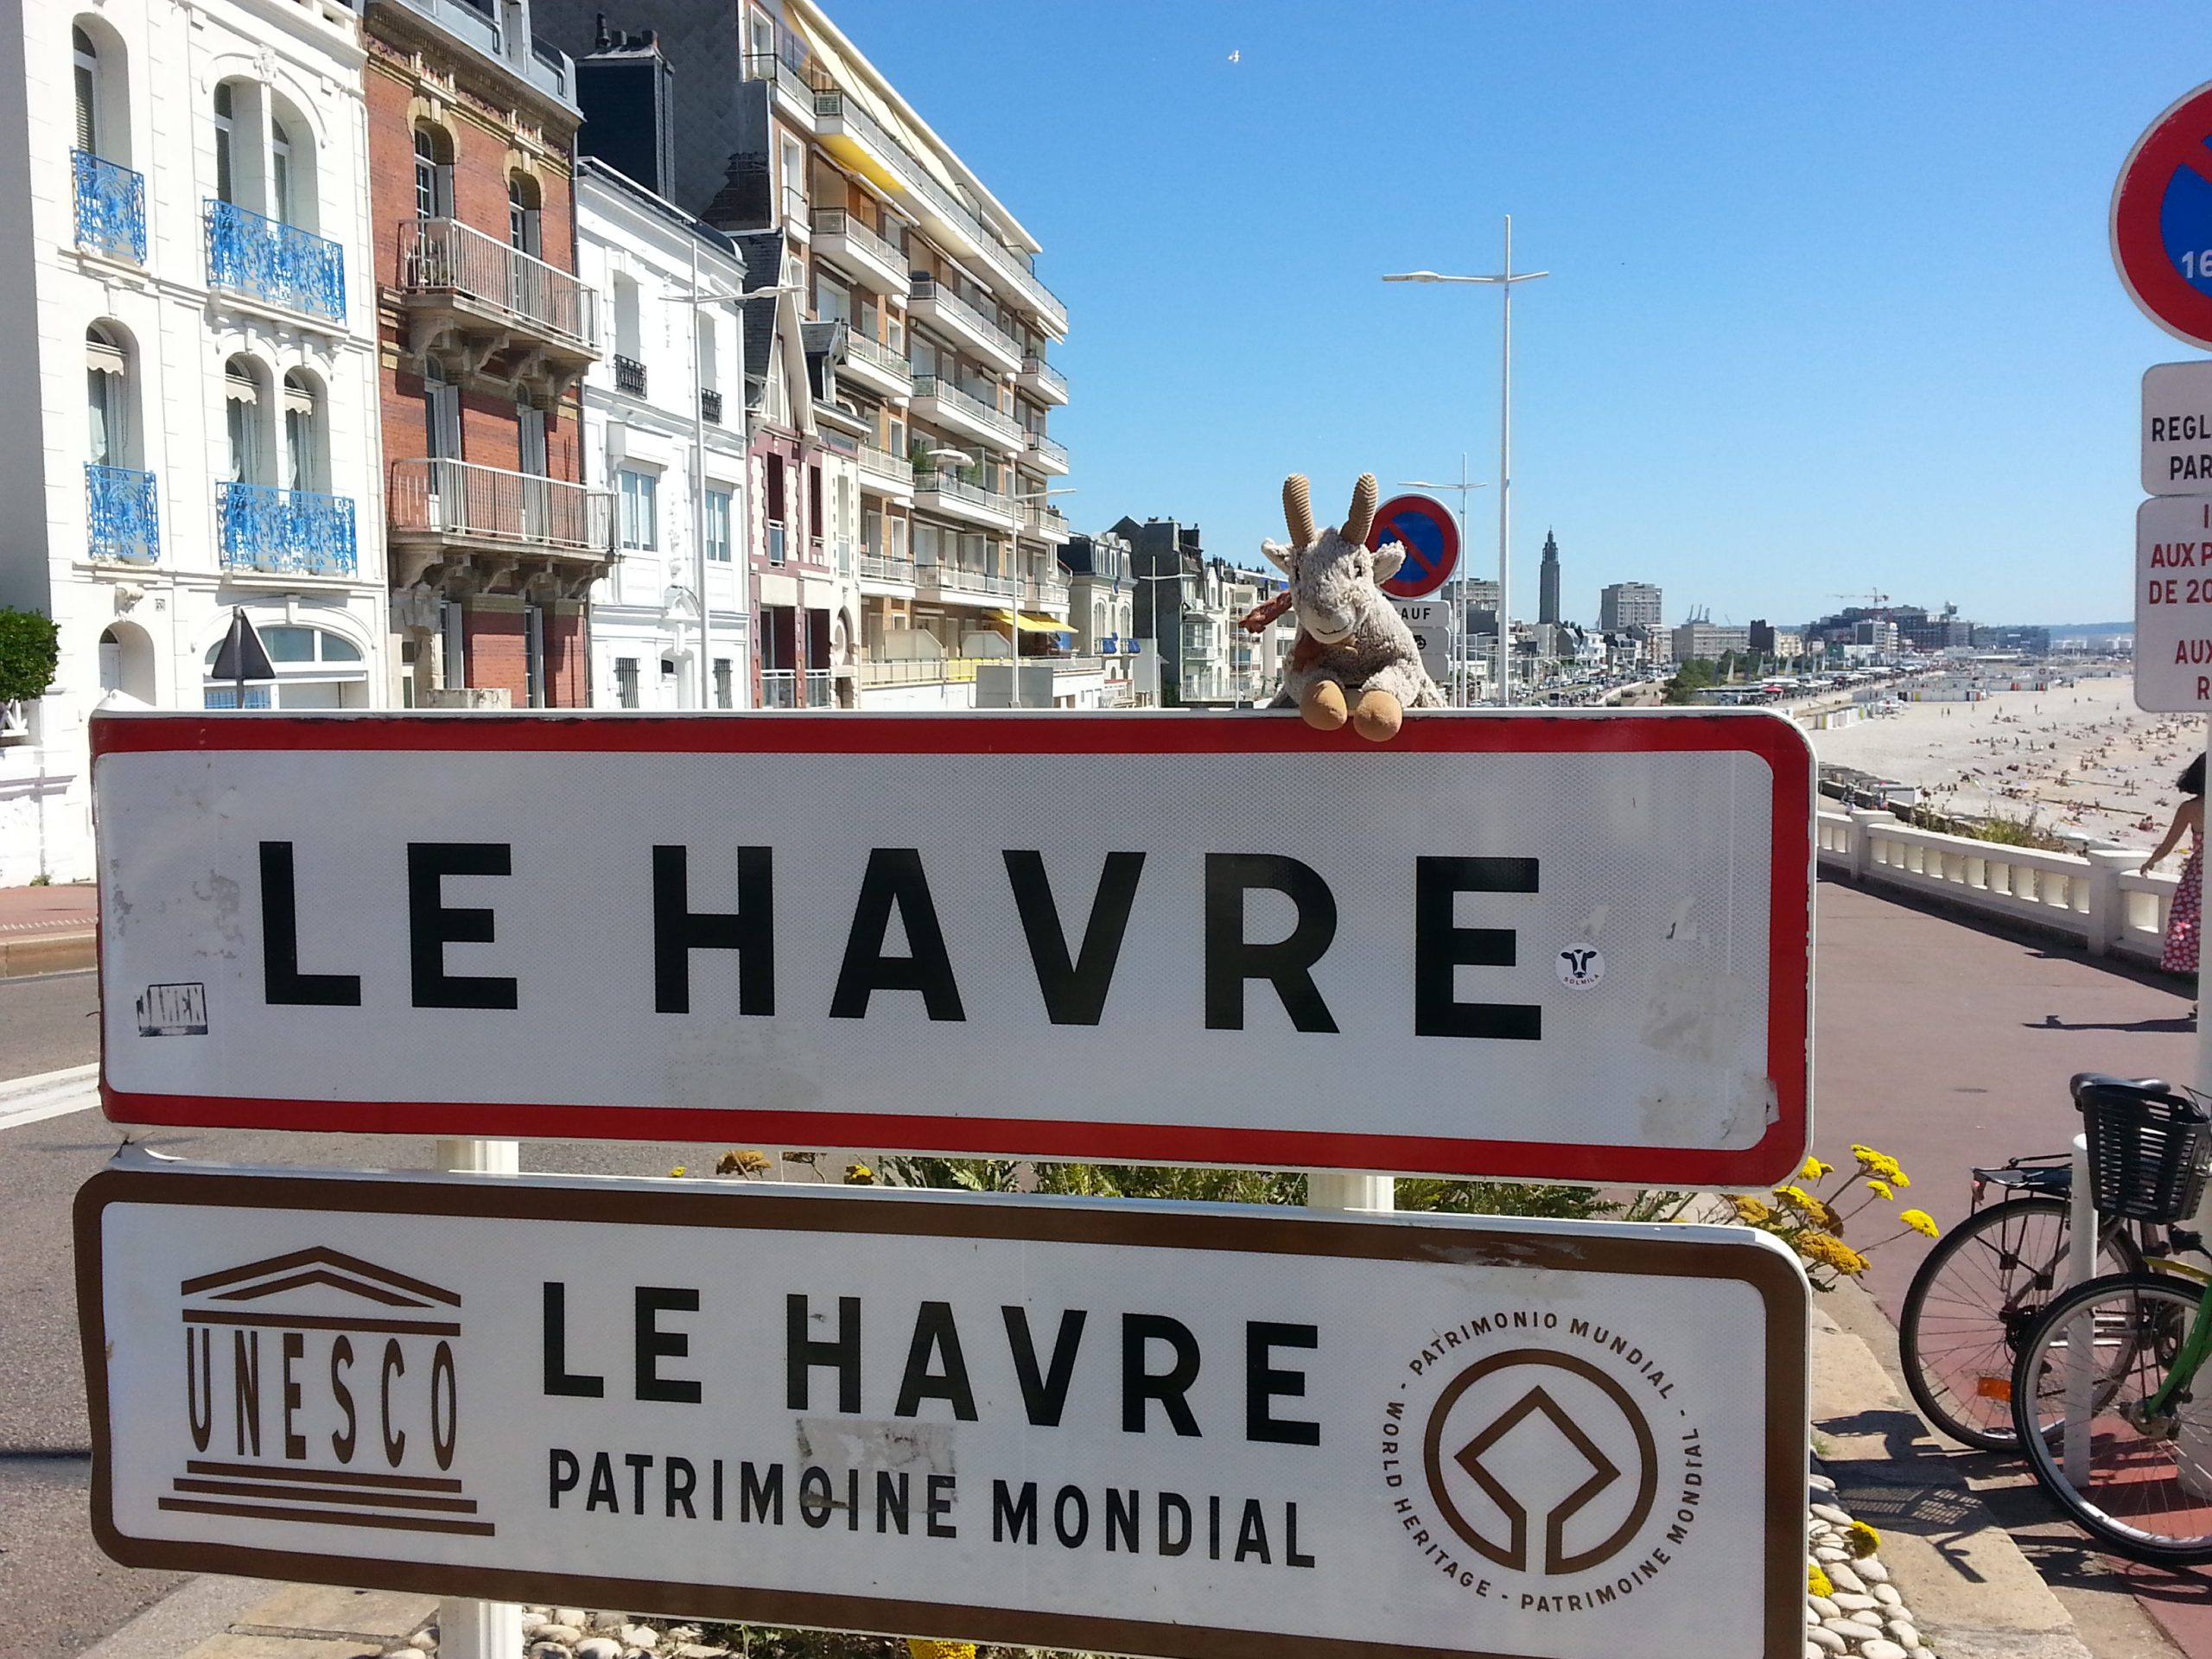 Chevra havraise, Chevra on the road, Pata de cabra : Le Havre City 1  #UnÉtéAuHavre